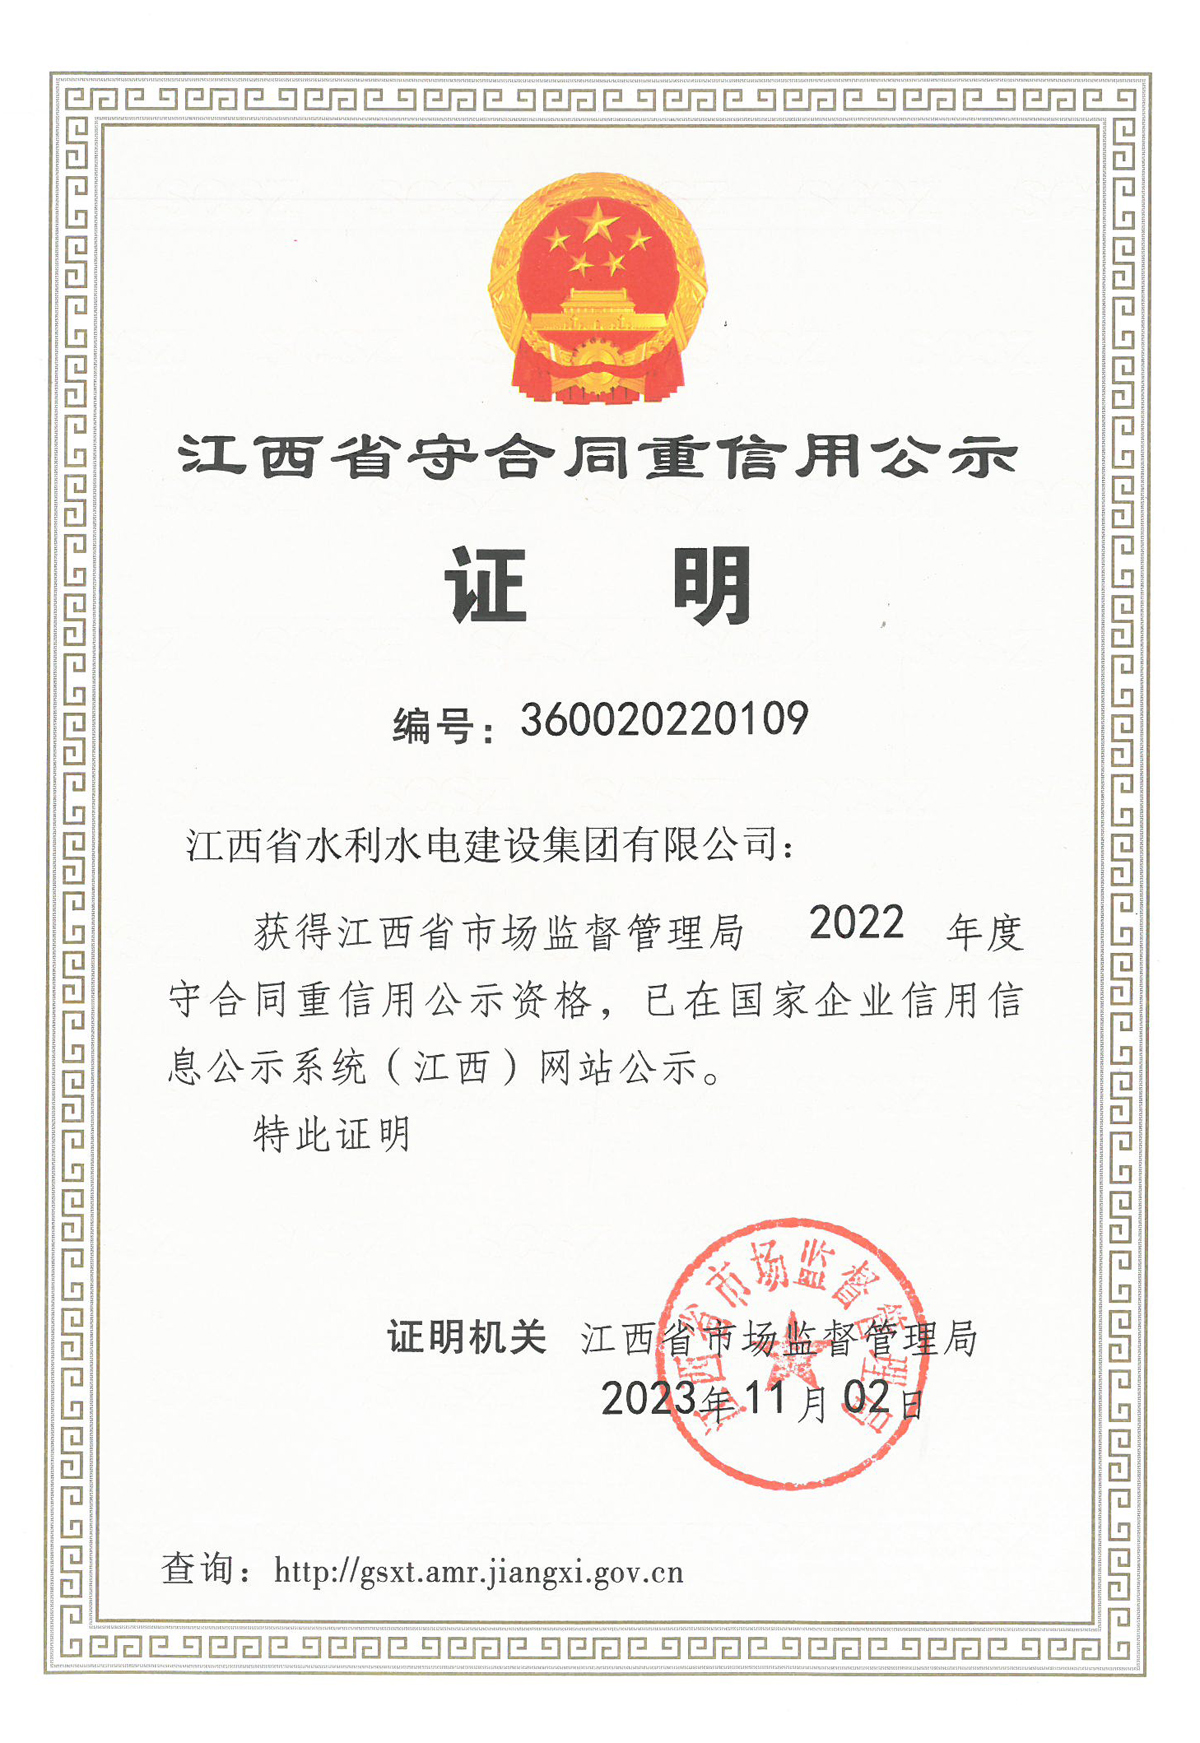 集团荣获江西省2022年度“守合同重信用”公示资格